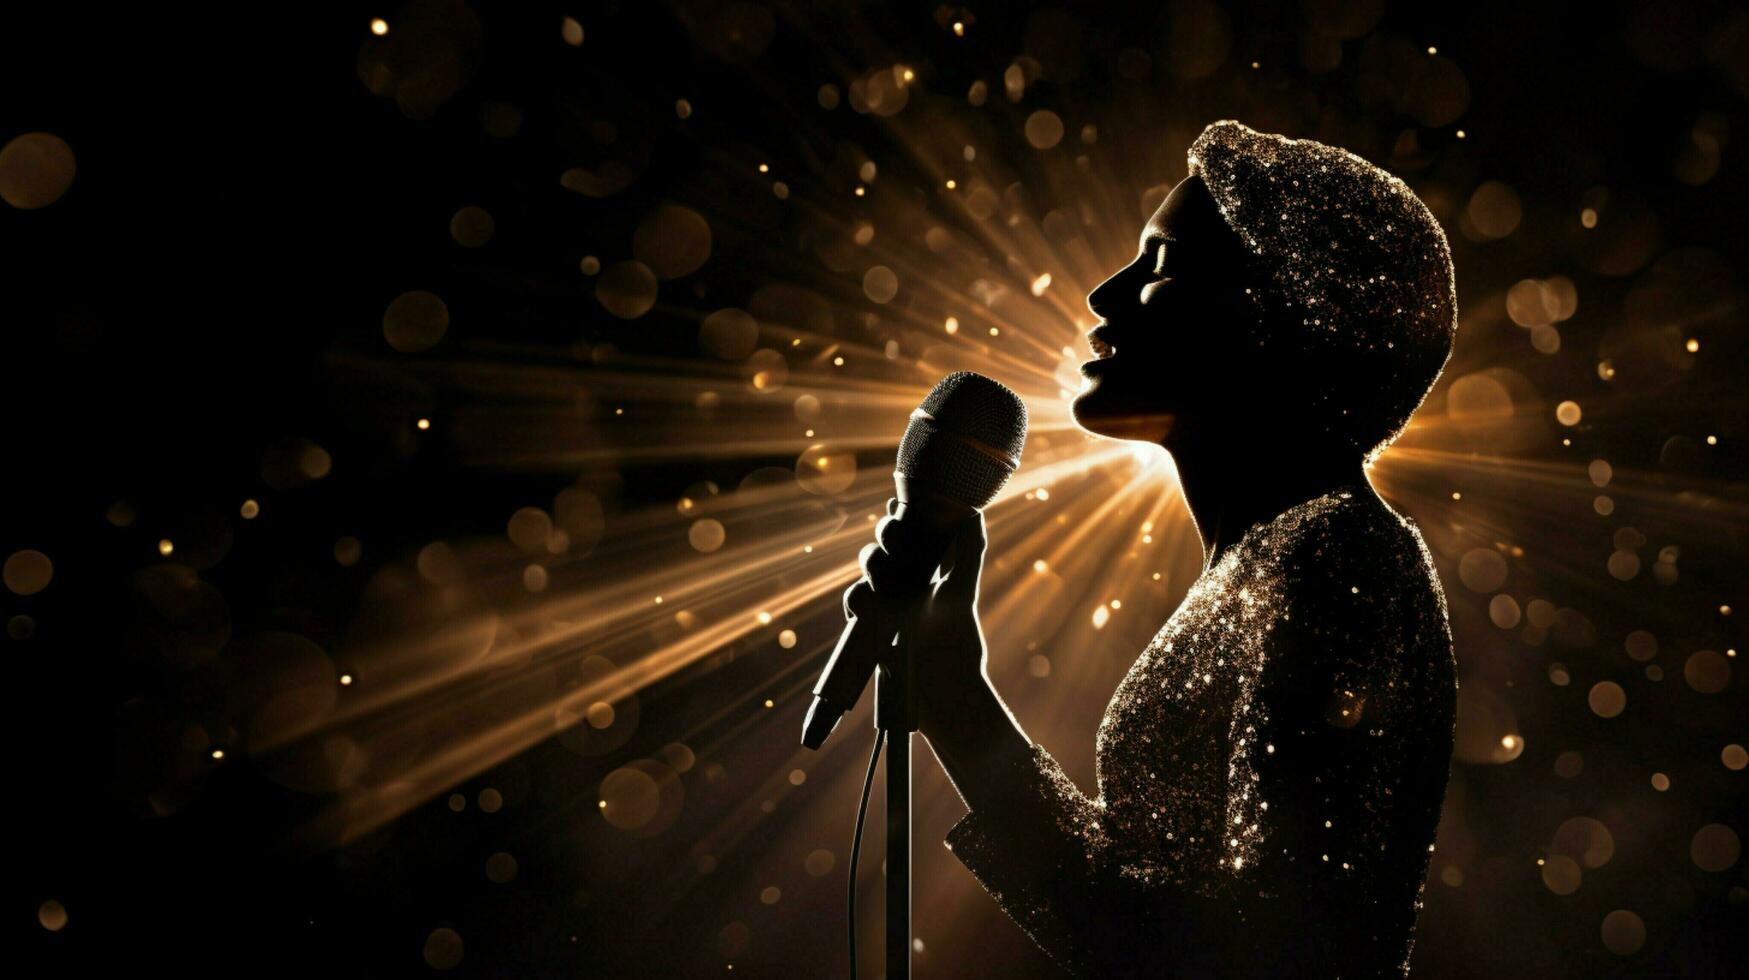 shiny microphone illuminates singer face on stage photo